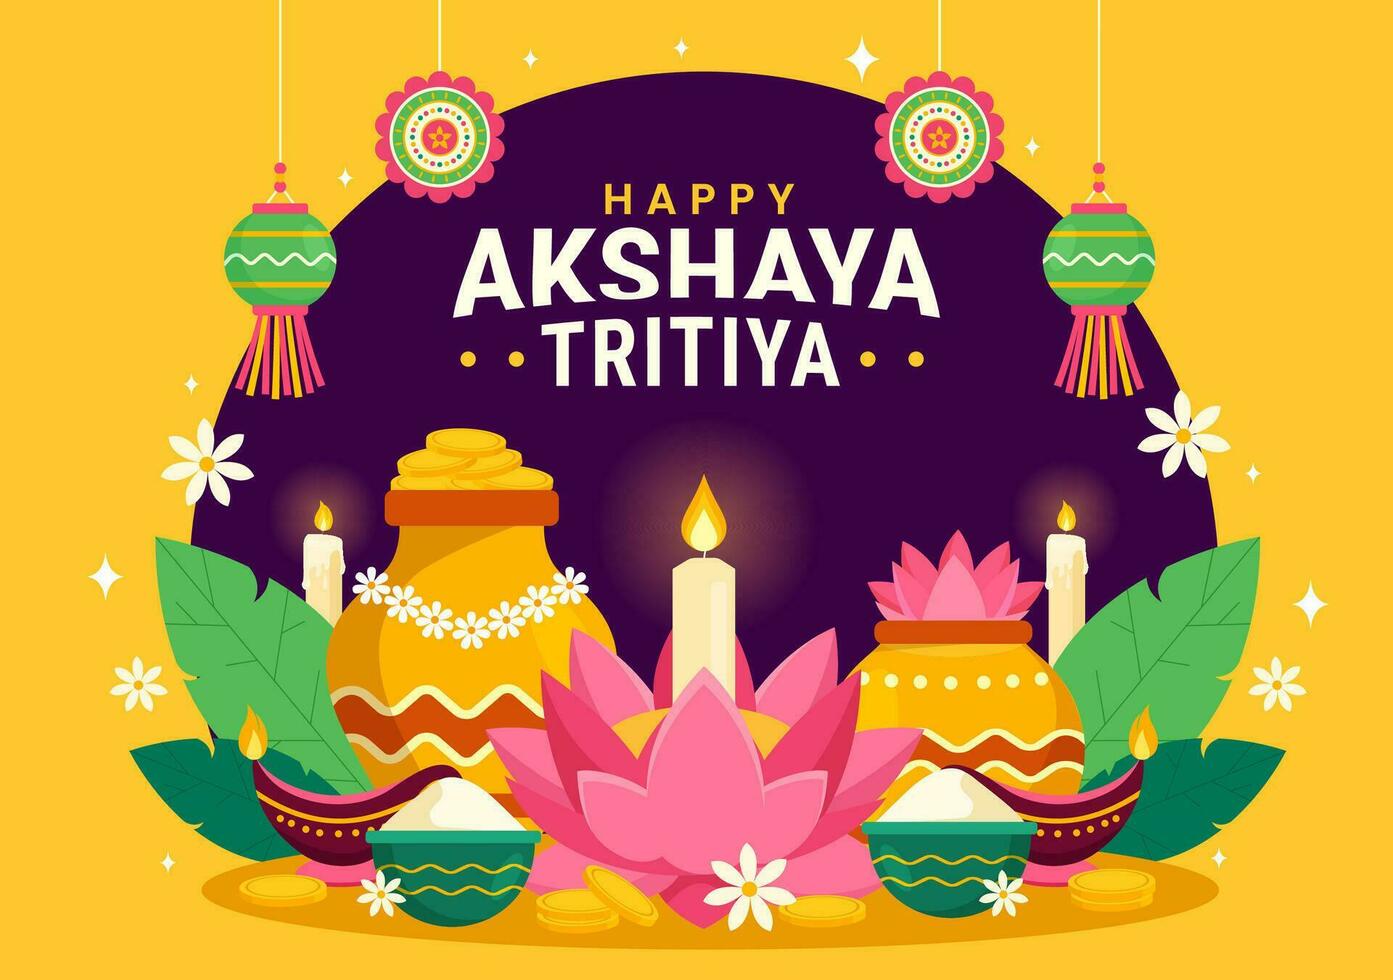 Akshaya tritiya Festival Vektor Illustration mit ein golden Kalasch, Kerze, Topf und Gold Münzen zum Dhanteras Feier im traditionell Hindu Urlaub